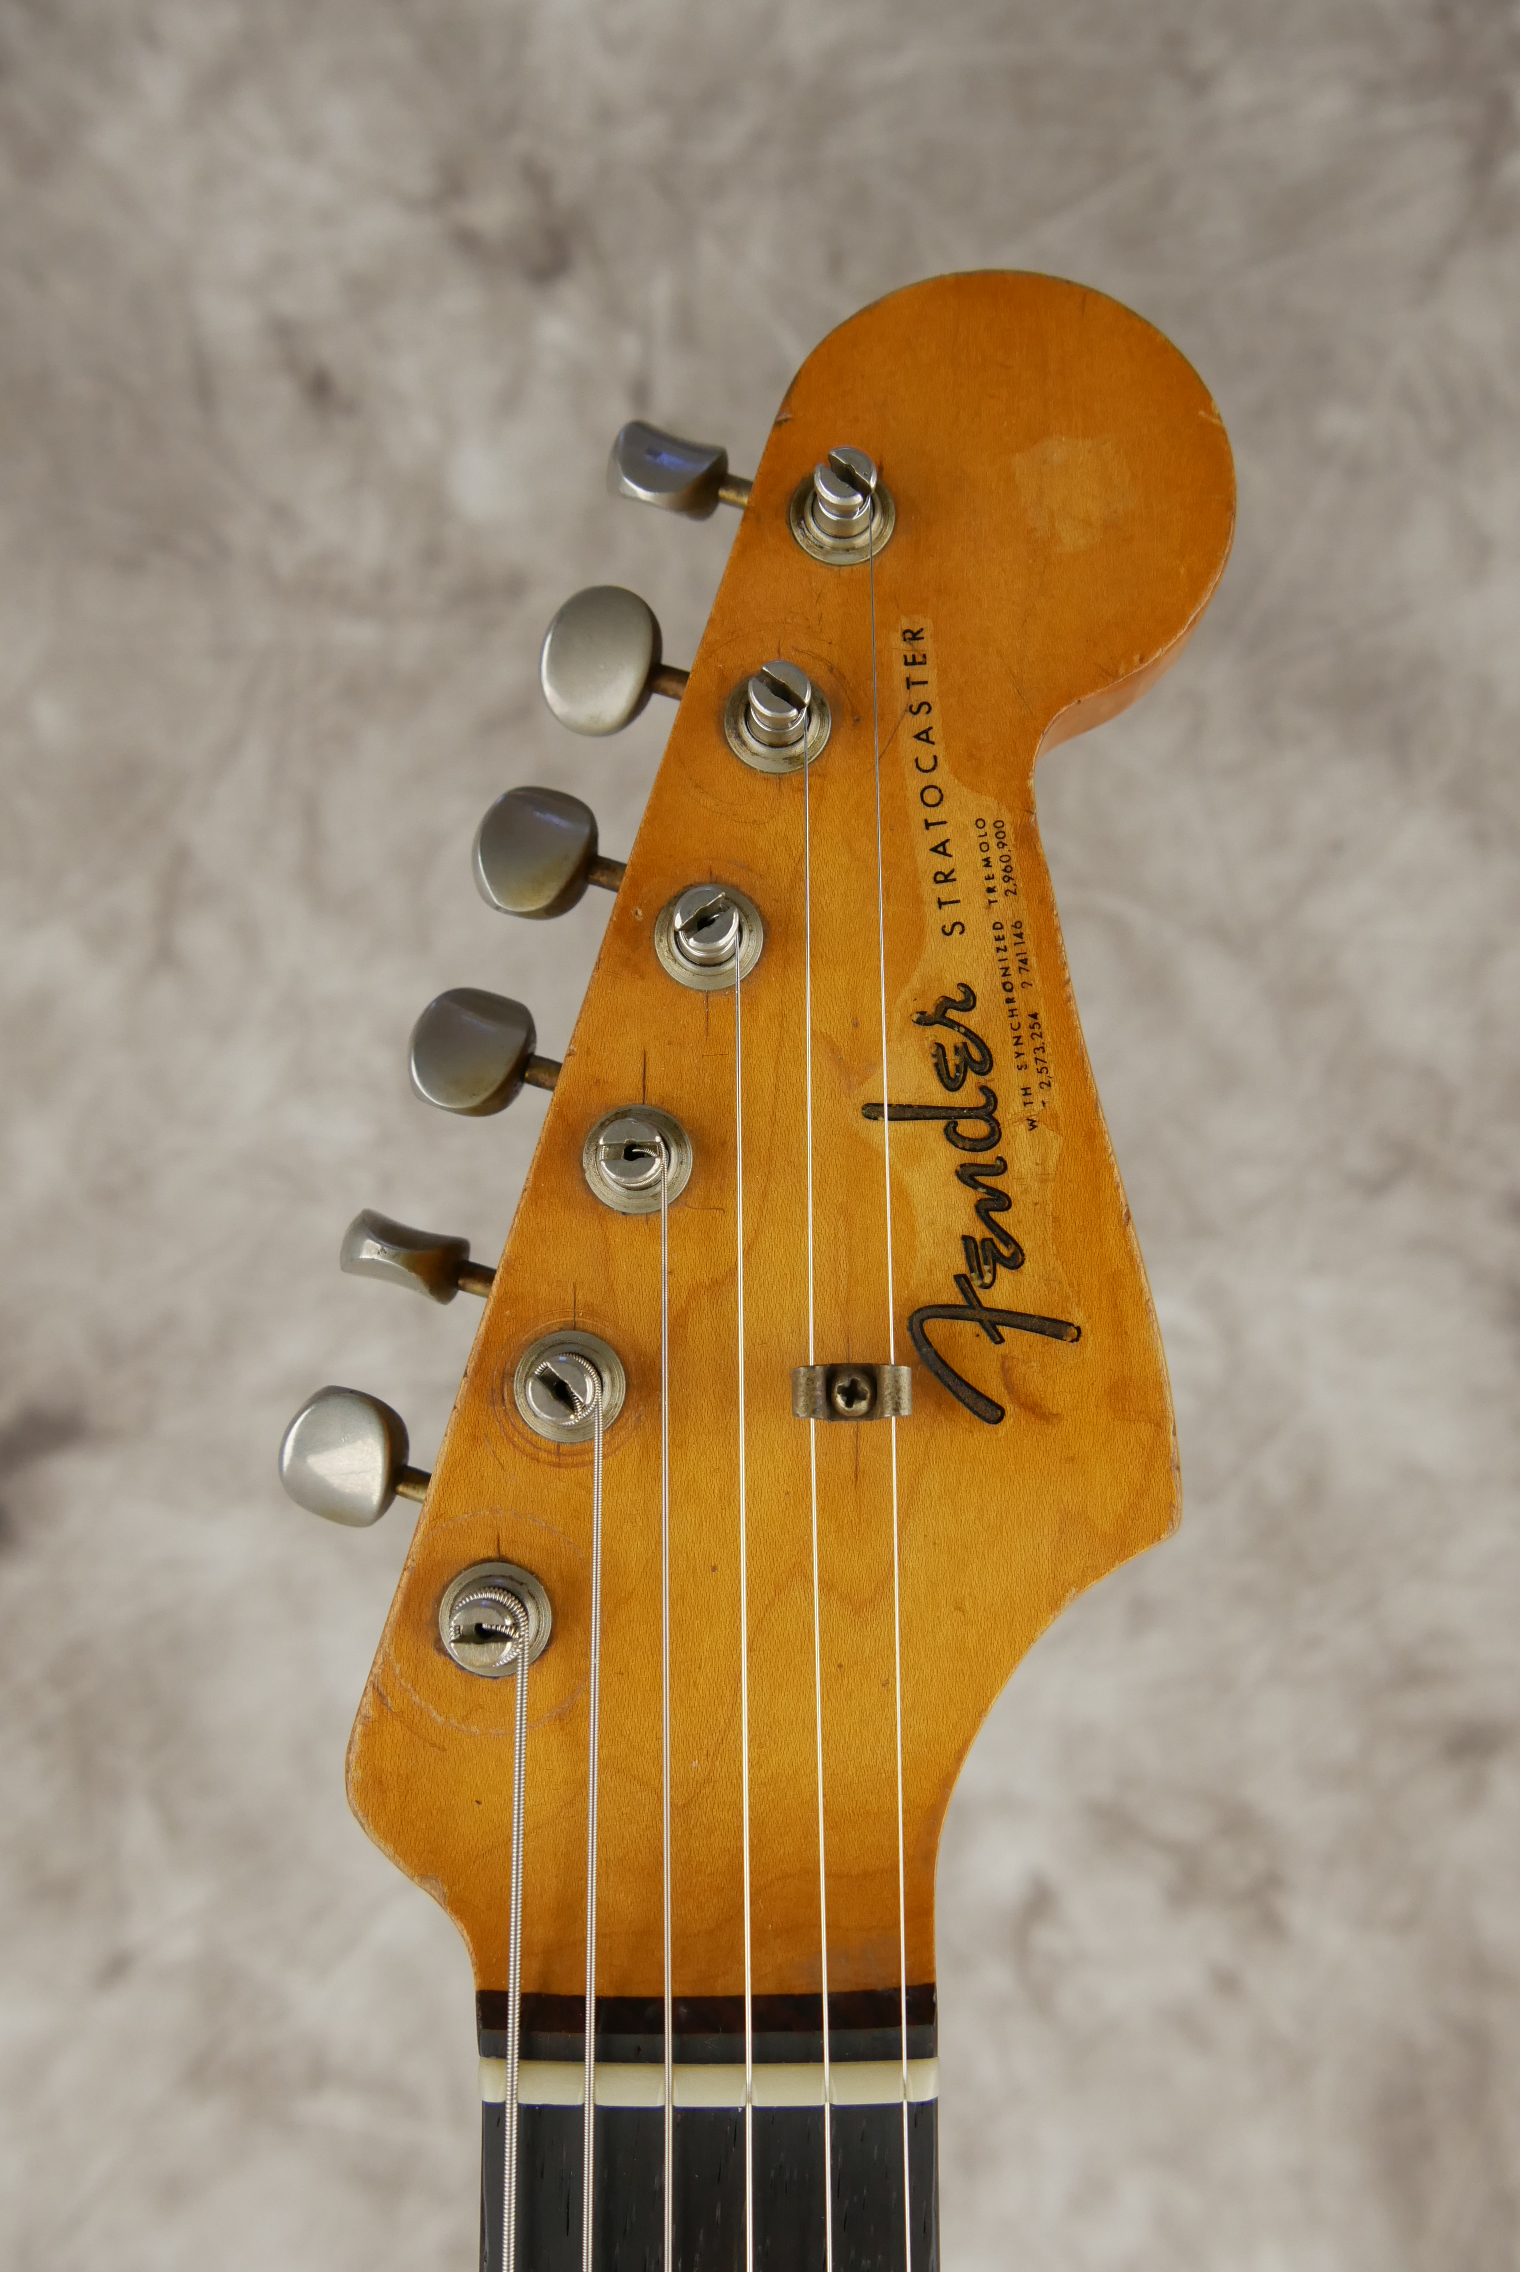 Fender-Stratocaster-1964-orange-refinish-009.JPG